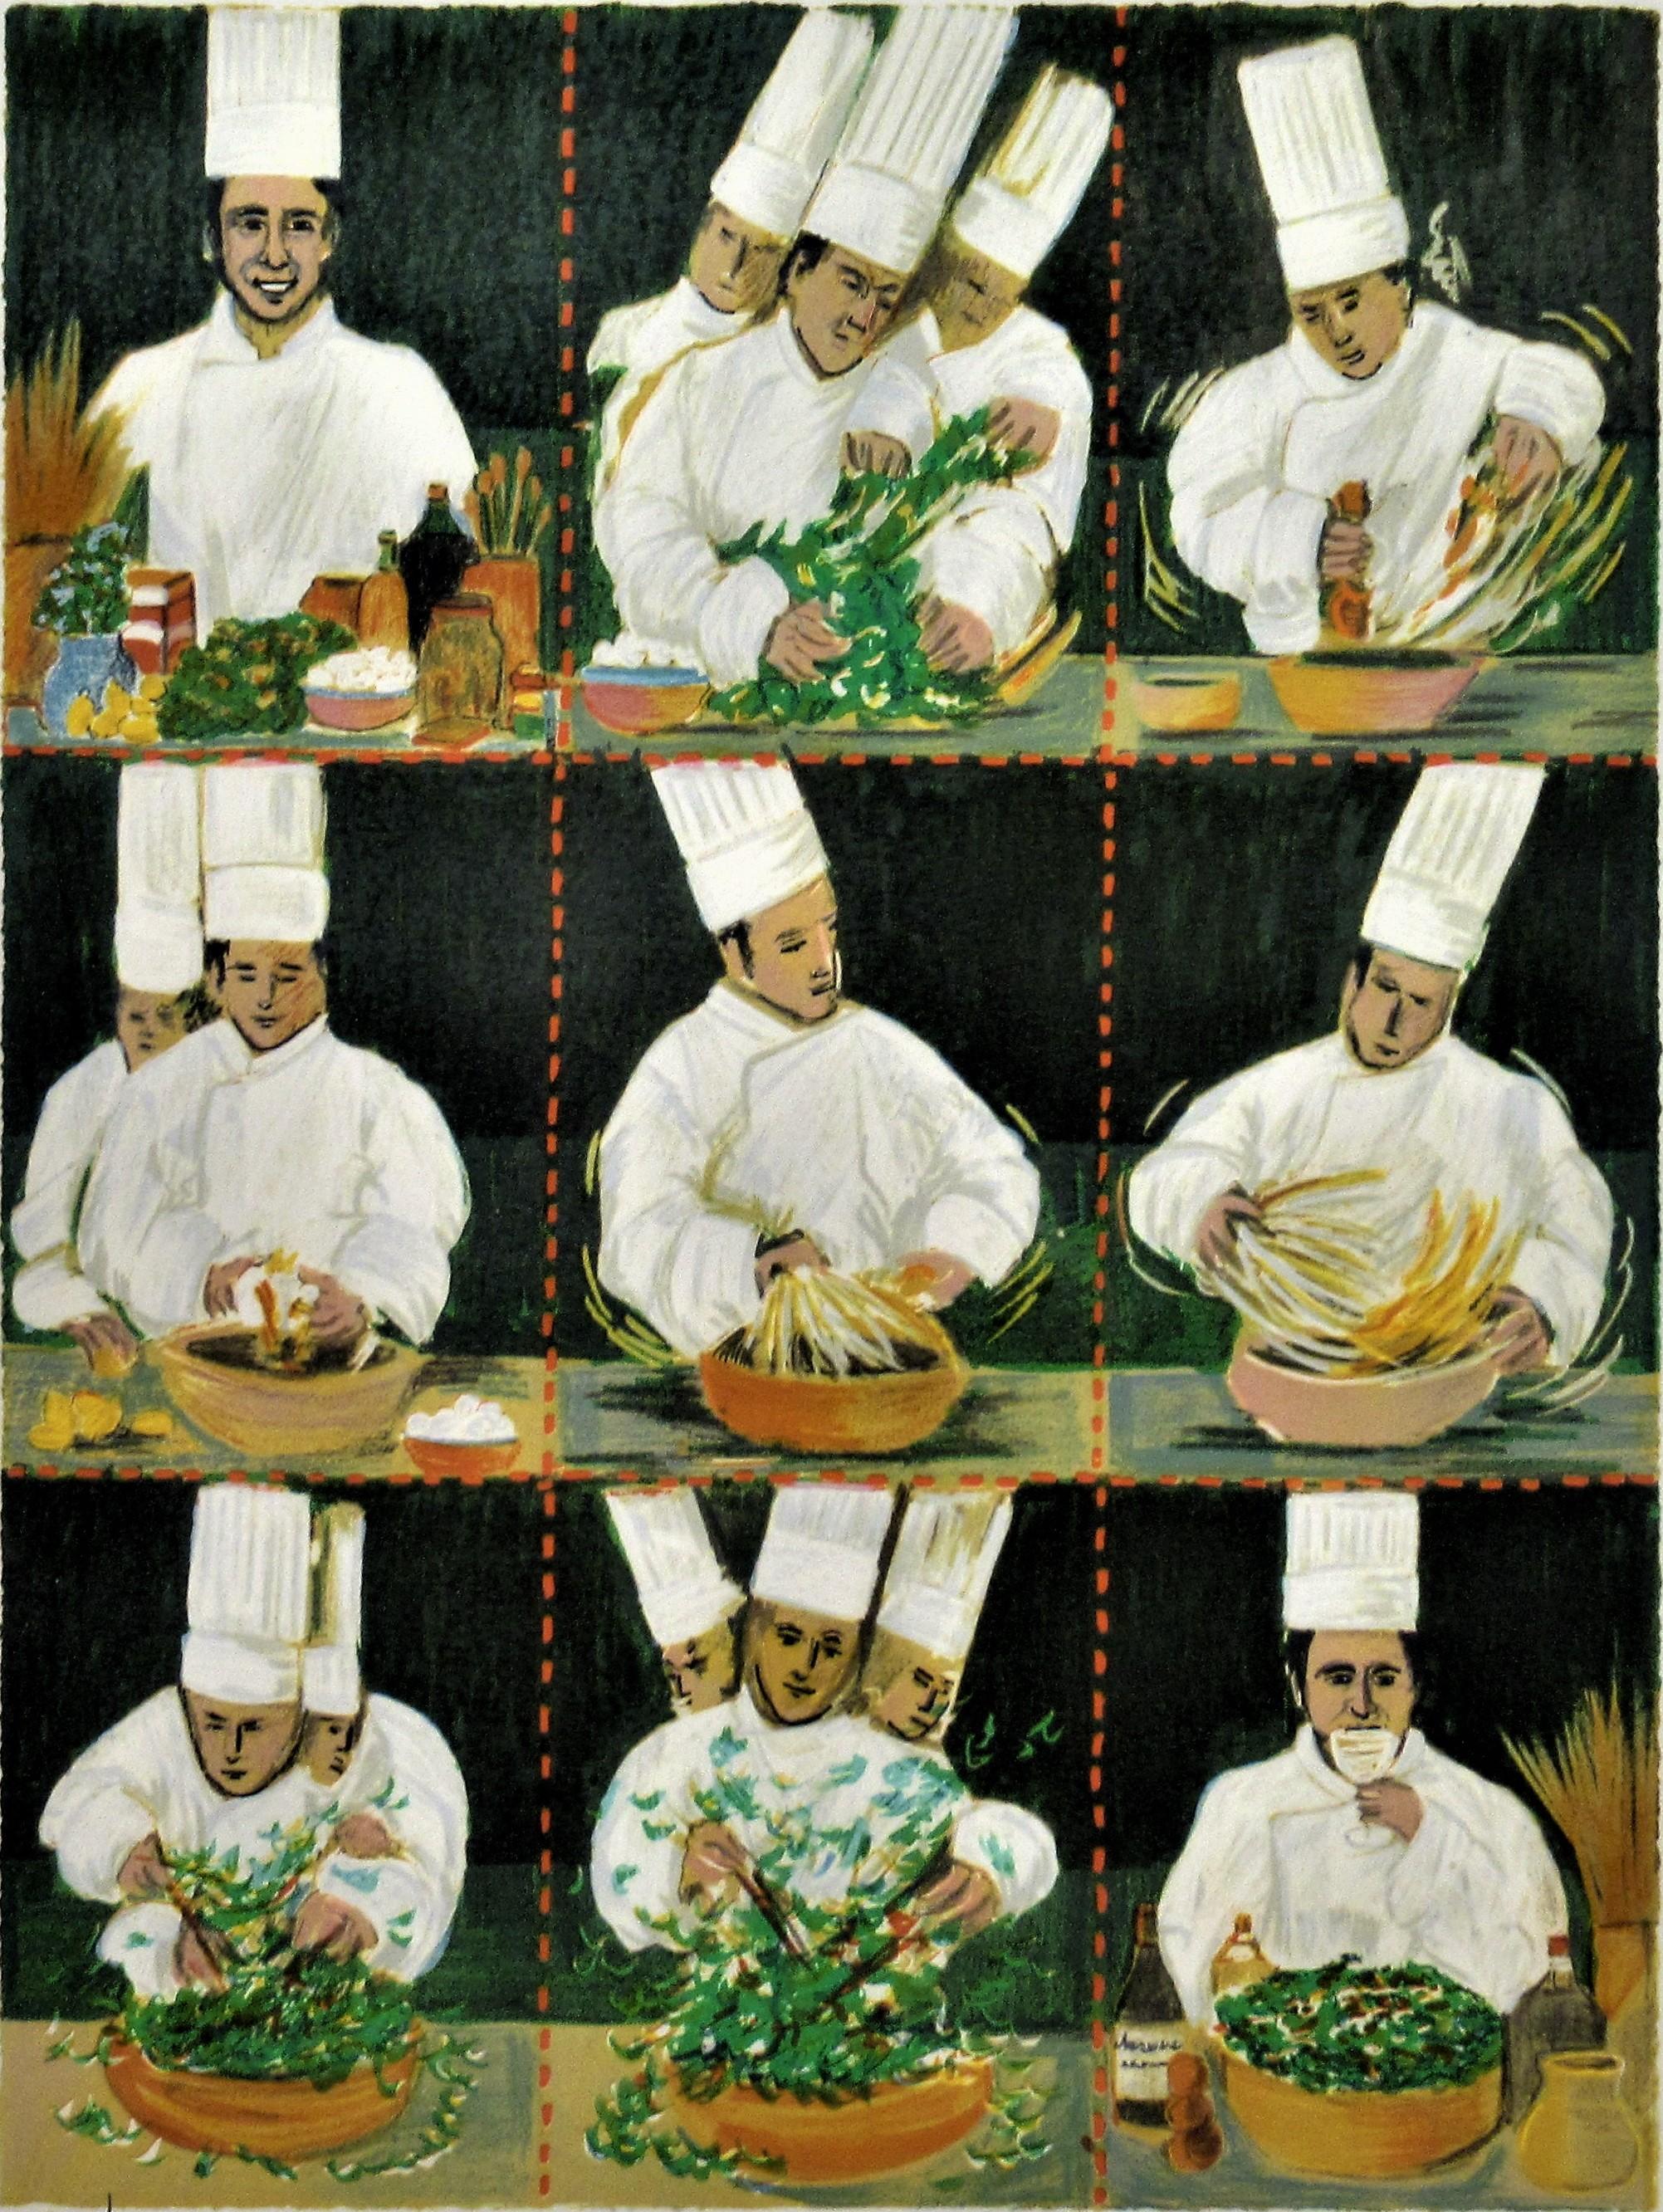 Salade Caesar avec Croutons Parmesan, chef Michel Richard de Citrus et deux autres. - Print de Guy Buffet